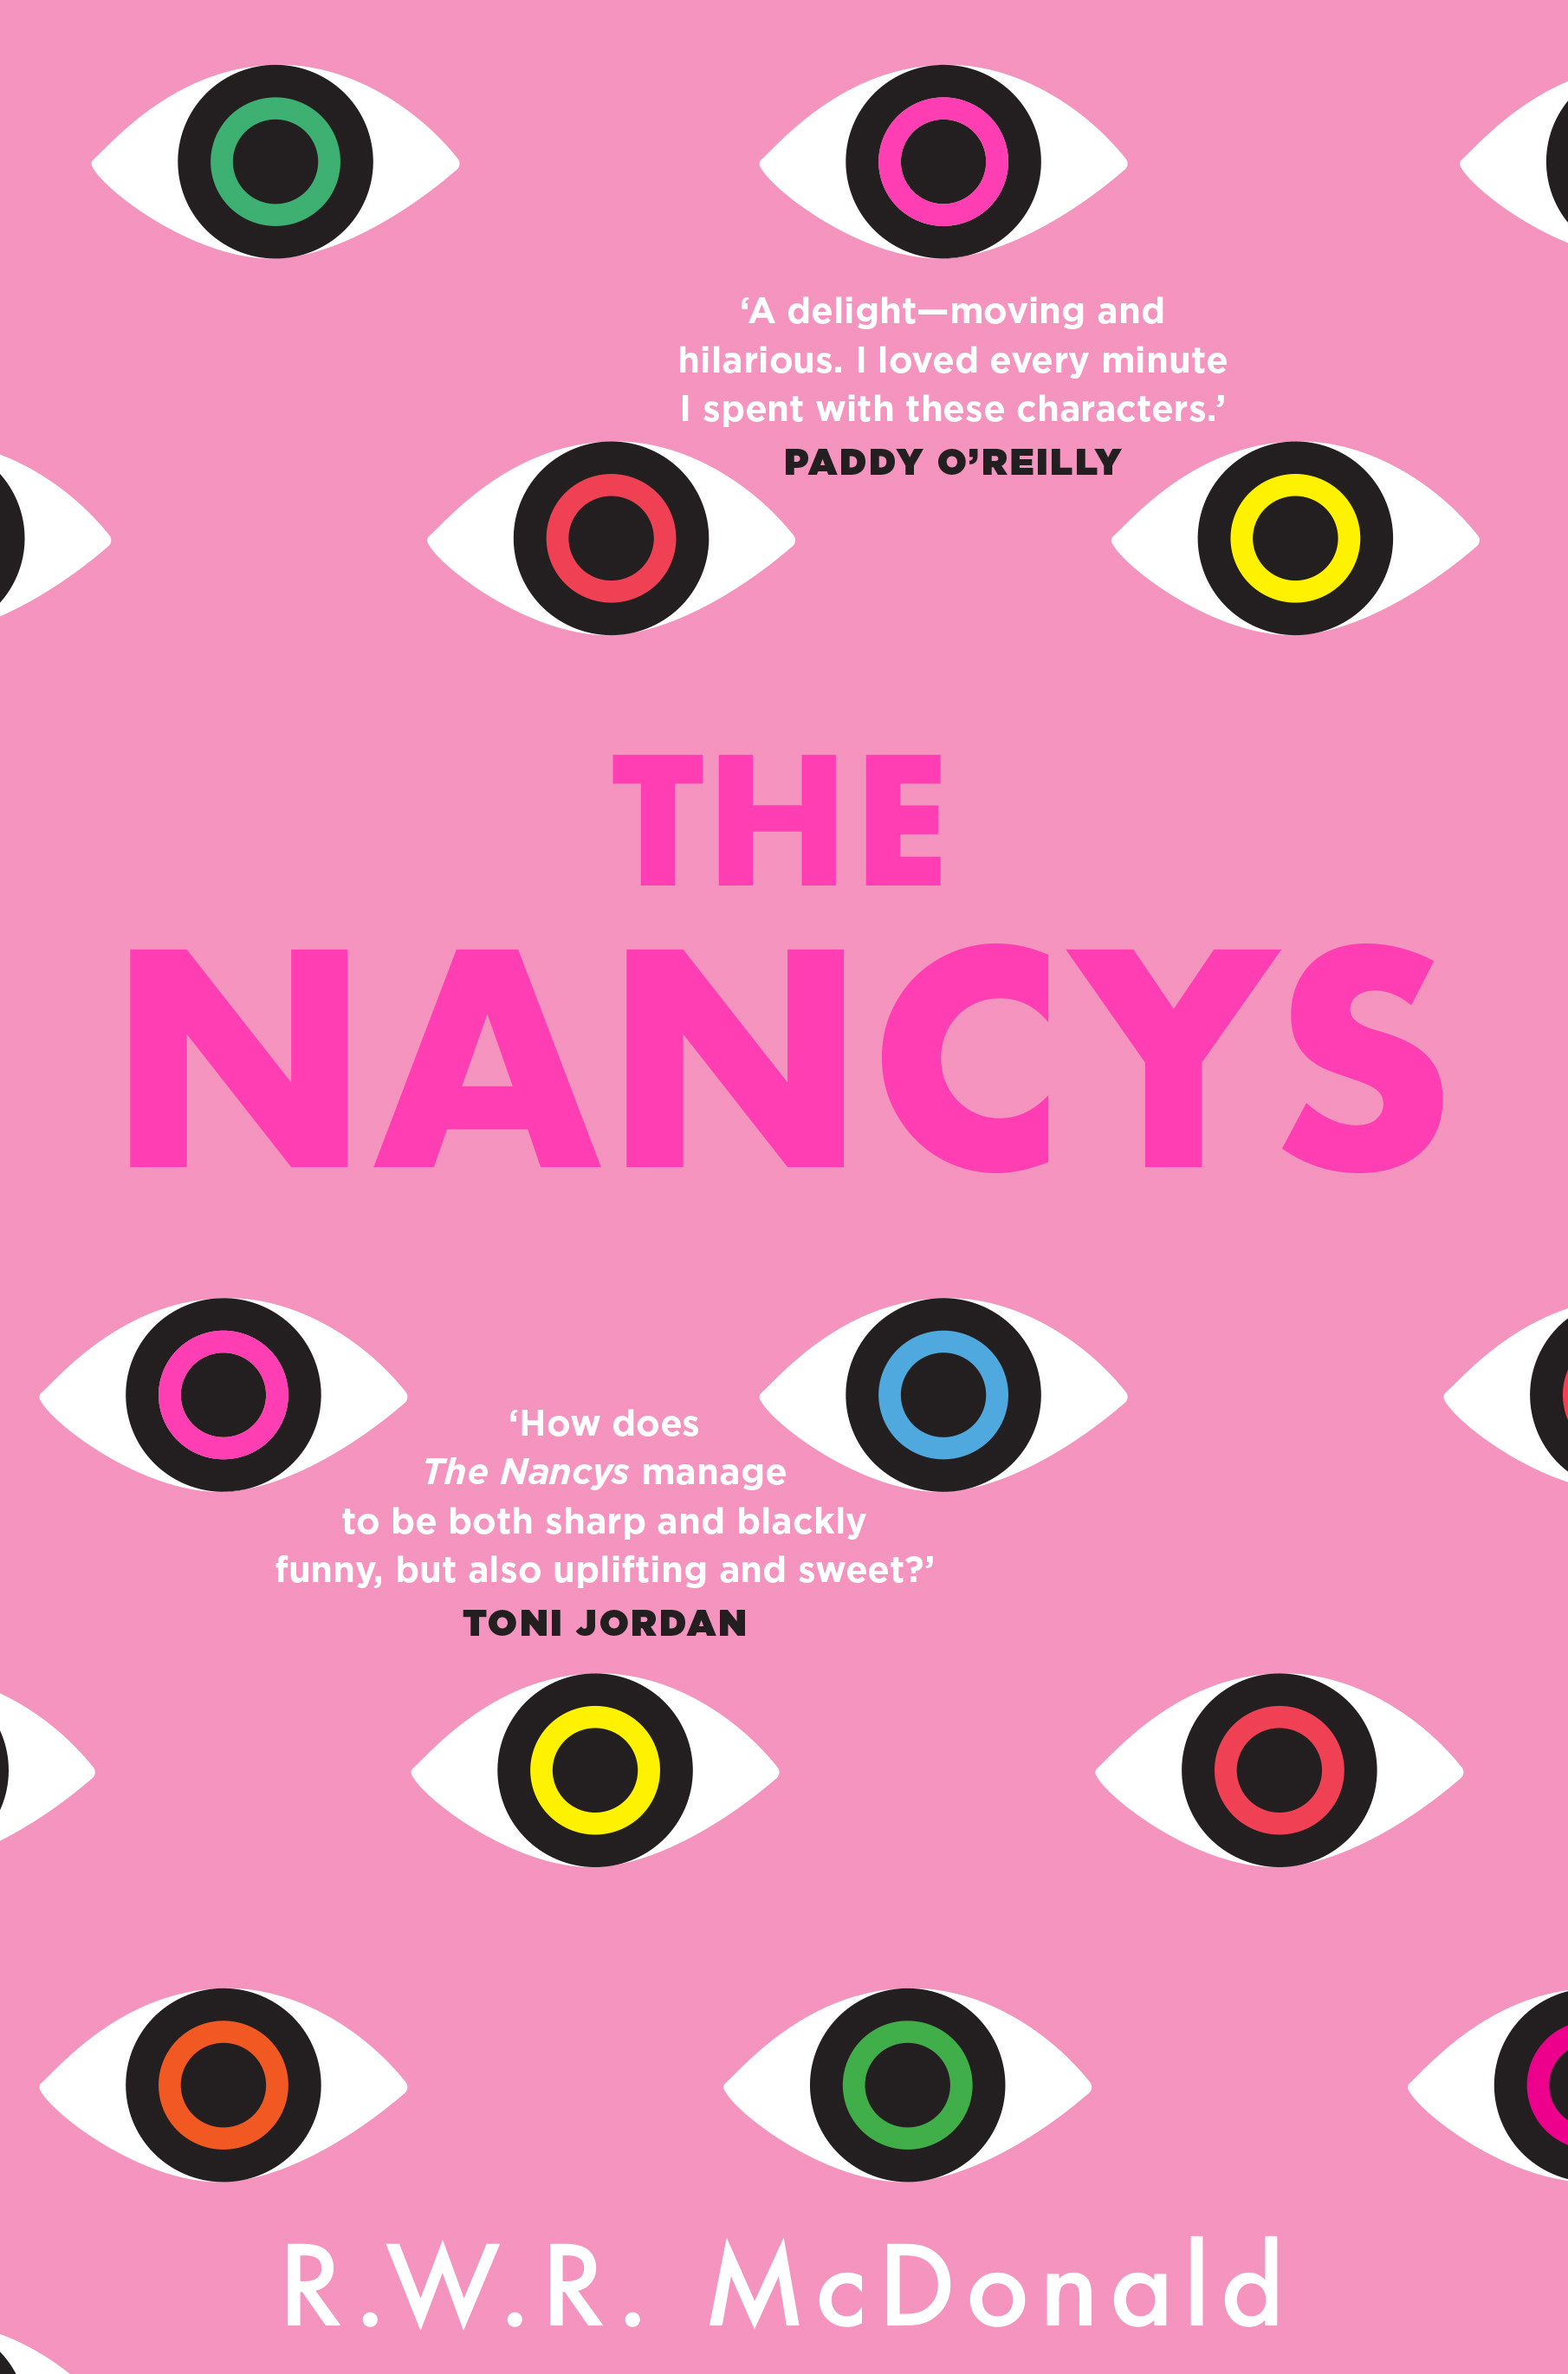 The Nancys by R. W. R. McDonald.